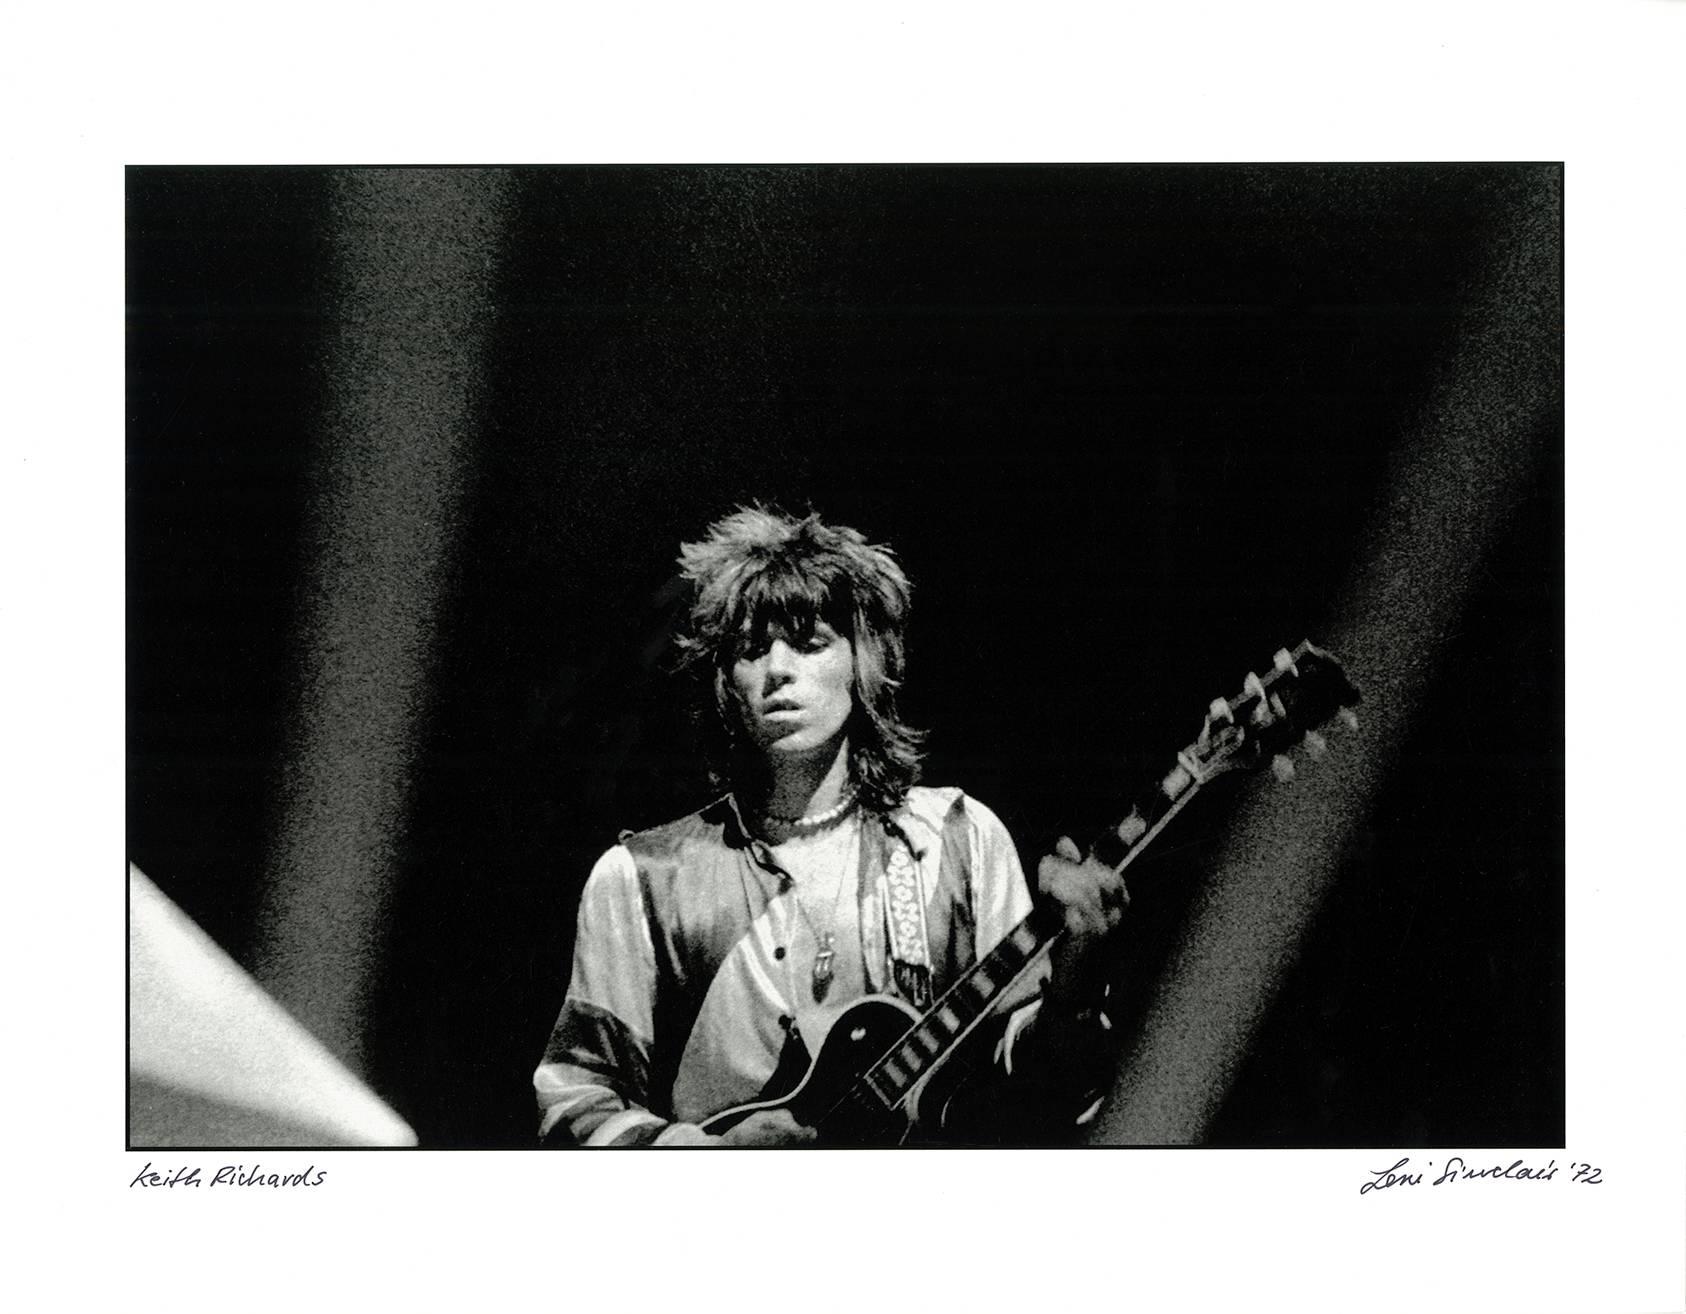 photographie des Rolling Stones de Dtroit 1972 (Keith Richards Rolling Stones) - Photograph de Leni Sinclair